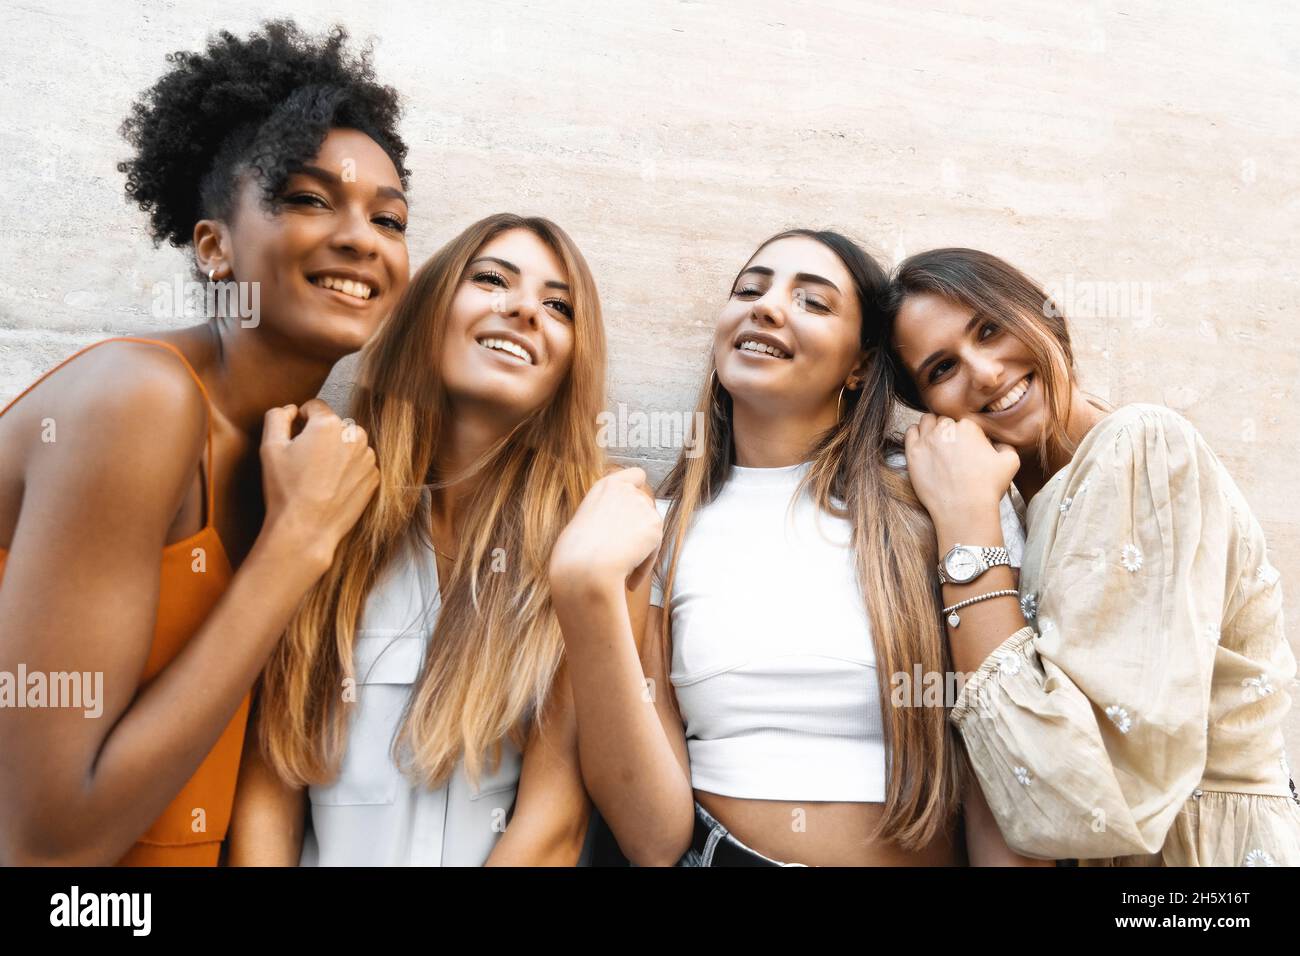 Fröhliche Freundinnen mit Spaß an der Wand stehen - Eine Gruppe fröhlicher junger Frauen versammeln sich sorglos Stockfoto